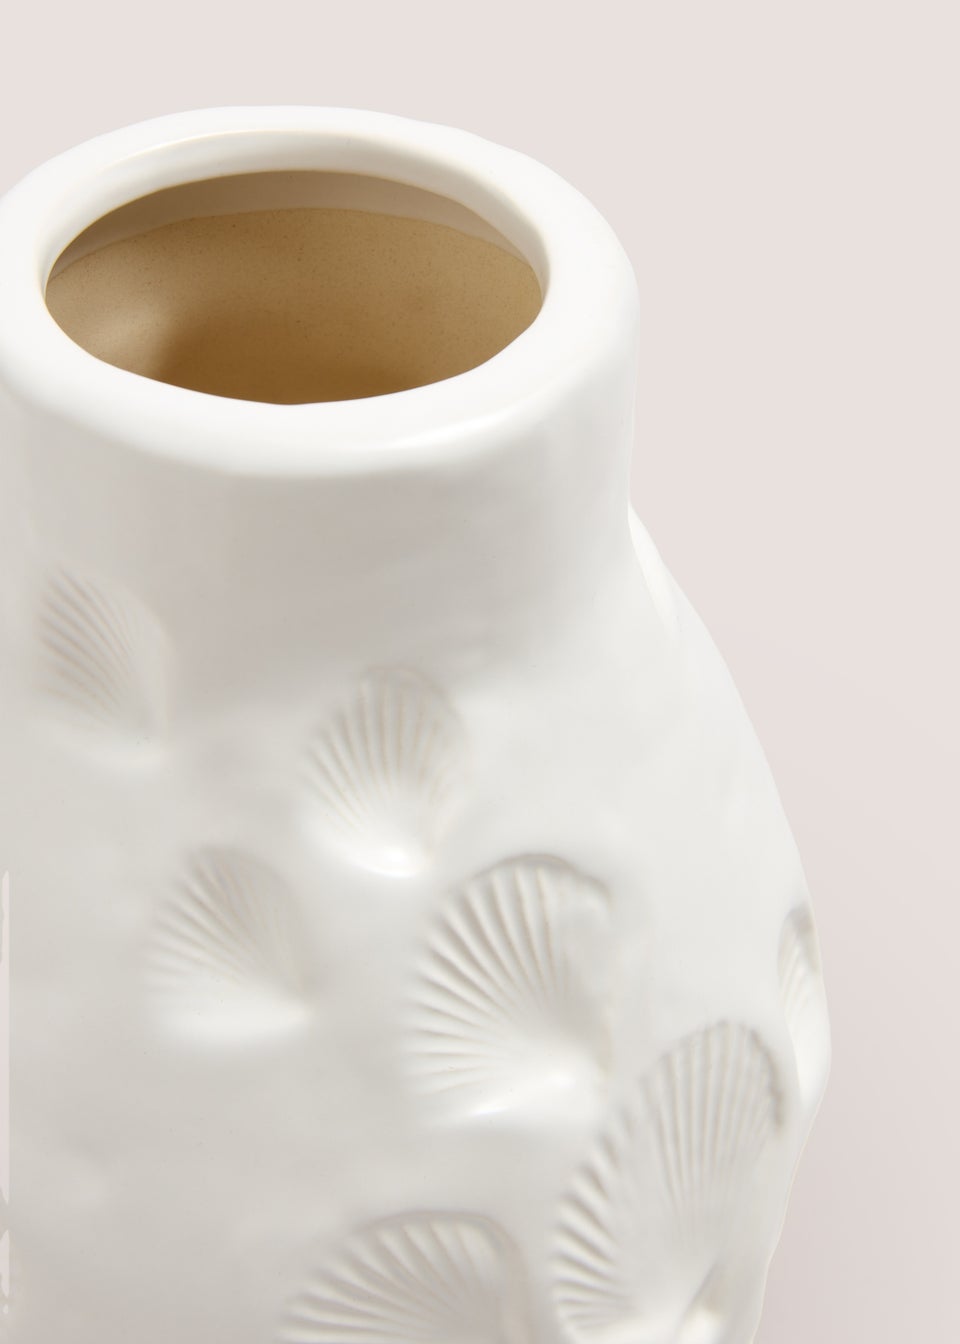 White Shell Embroidered Vase (18cm x 15.5cm x 15.5cm)